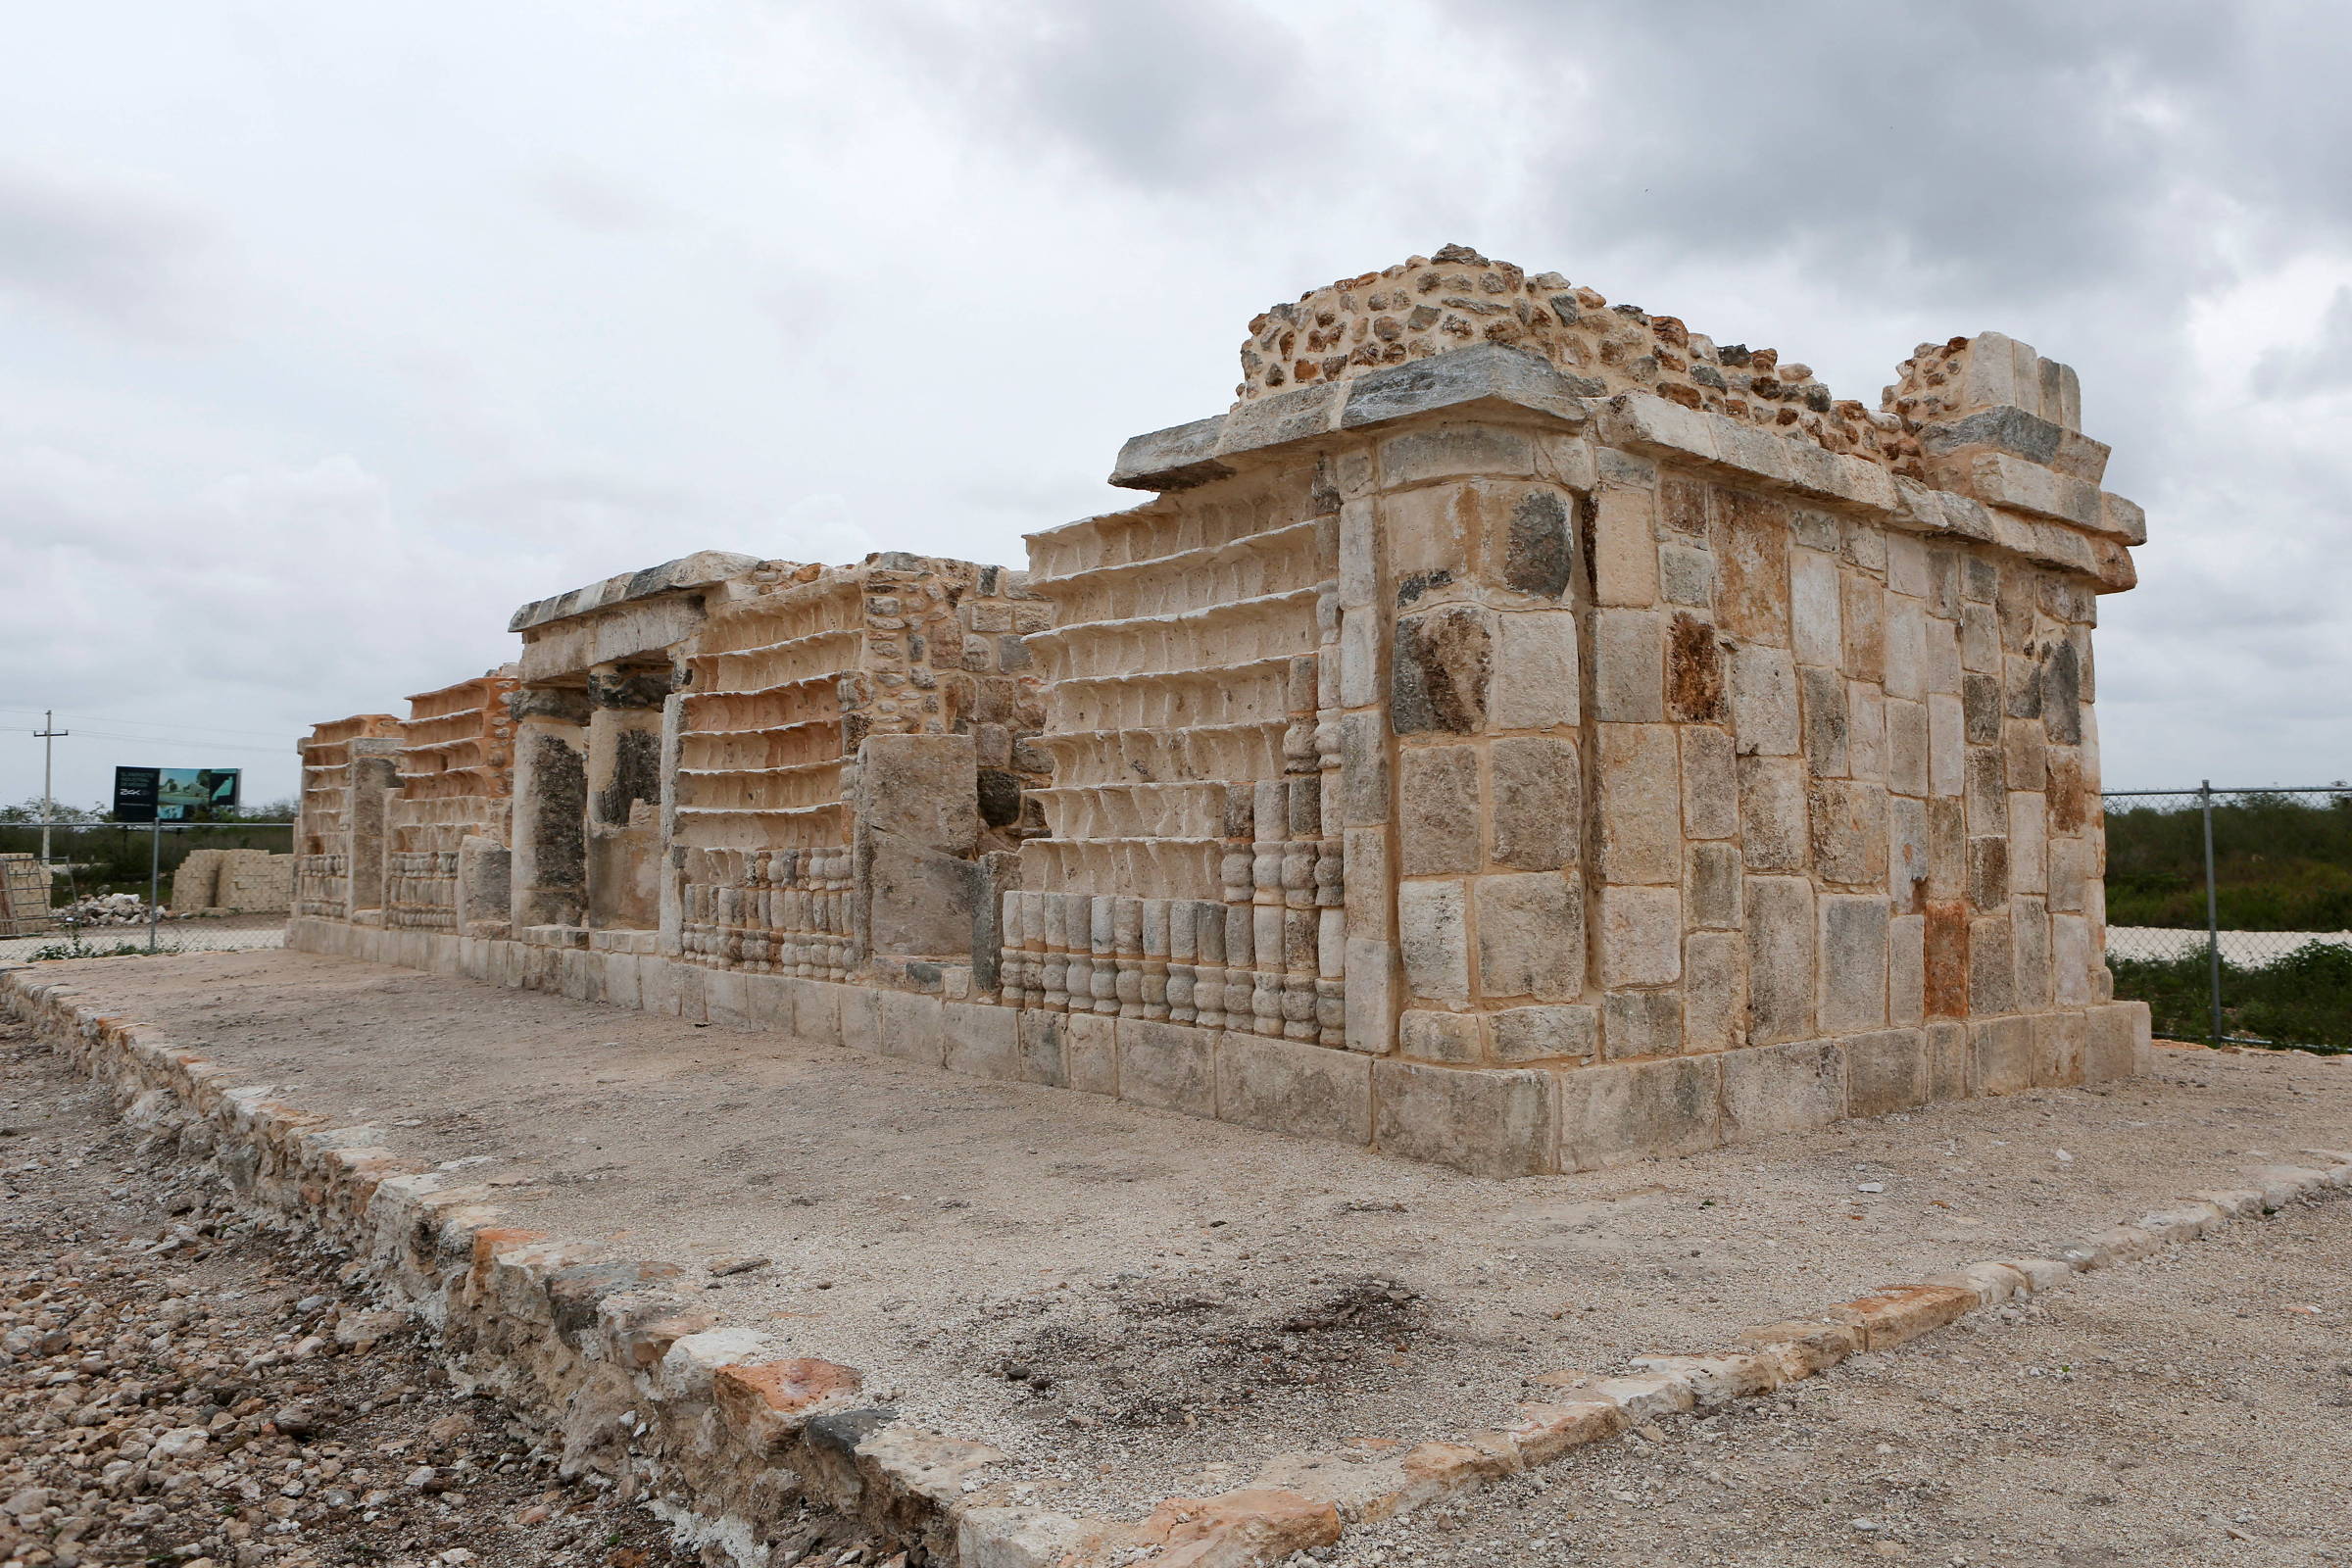 Arqueólogos descubren la antigua ciudad maya en el oleoducto – 28/05/2022 – Ciencia